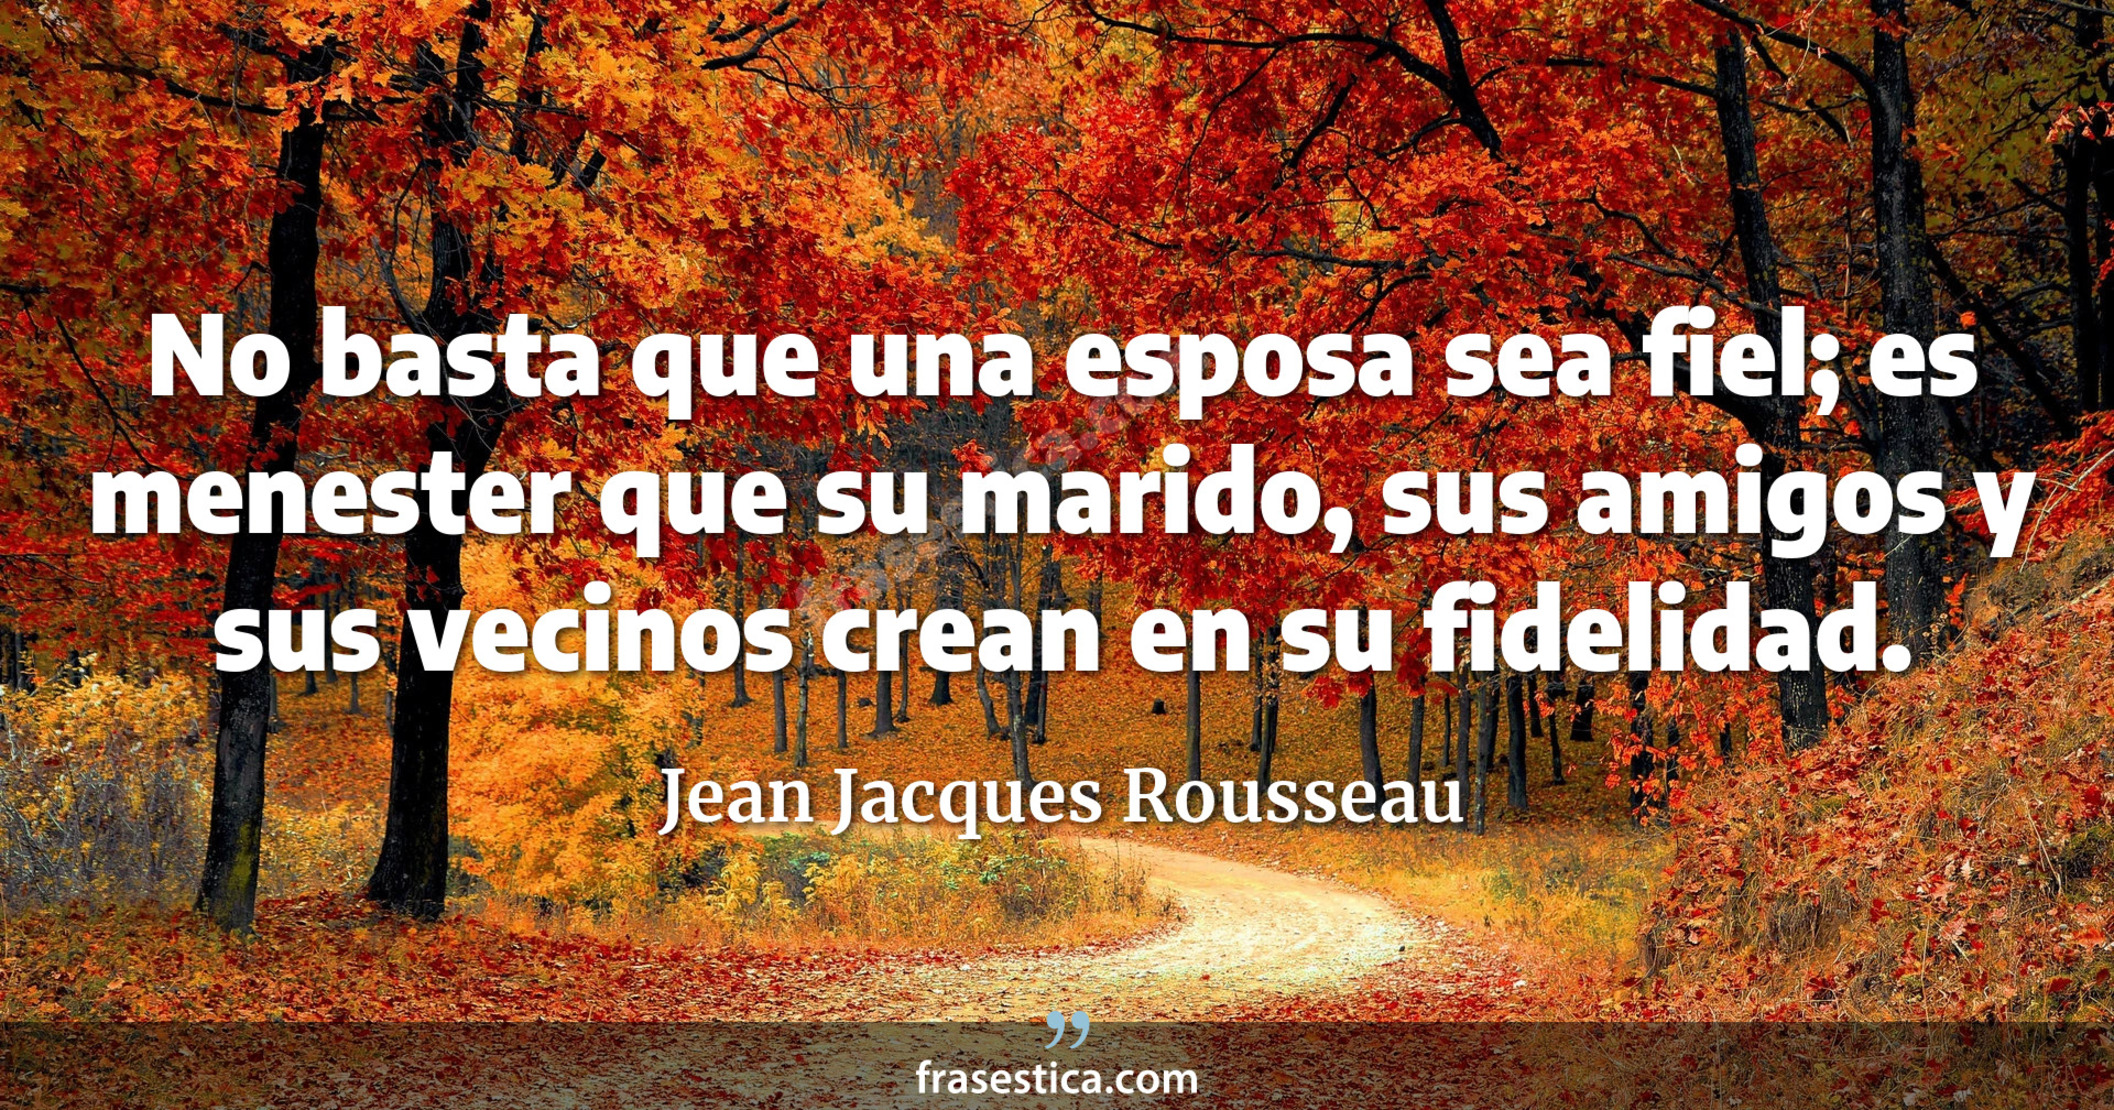 No basta que una esposa sea fiel; es menester que su marido, sus amigos y sus vecinos crean en su fidelidad. - Jean Jacques Rousseau